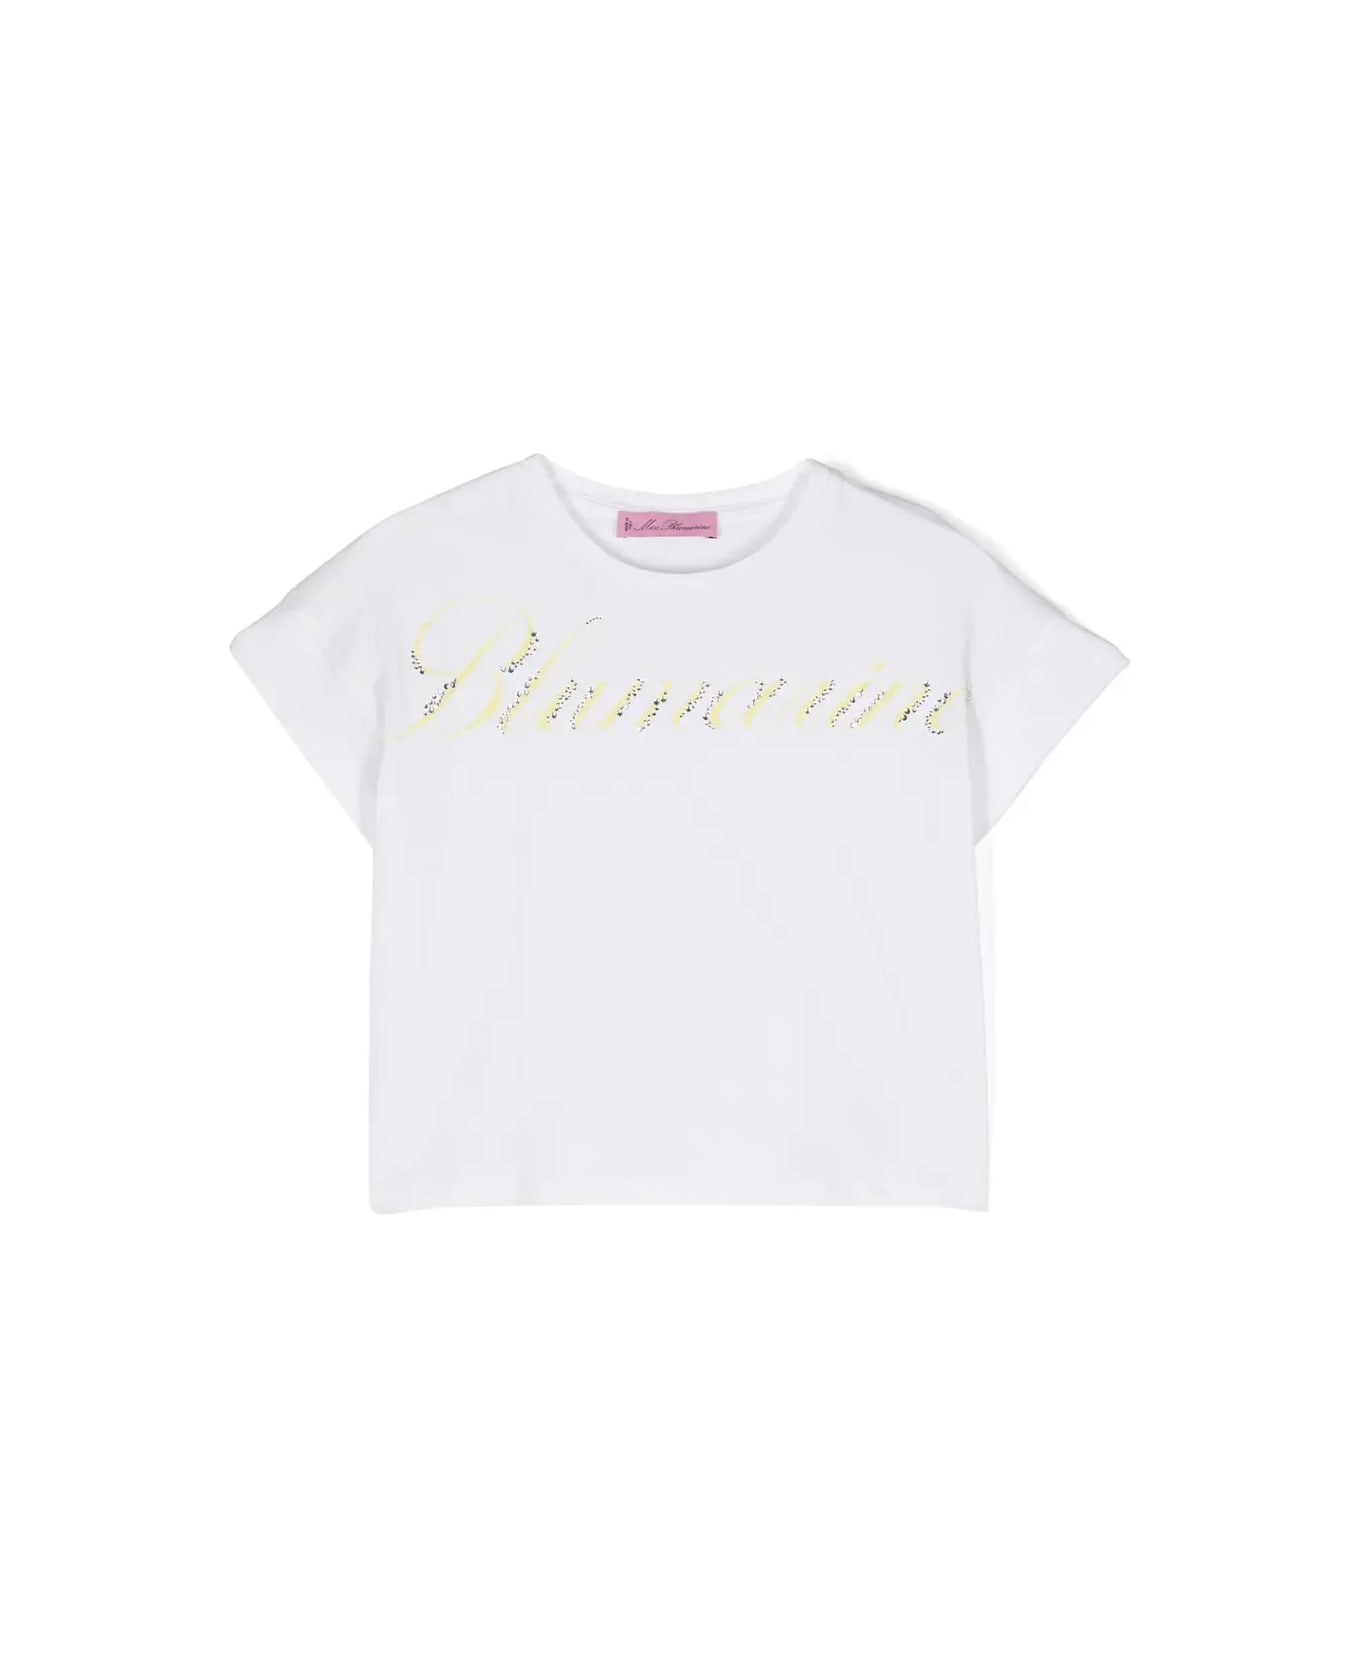 Miss Blumarine White T-shirt With Logo Print With Rhinestones - Bianco